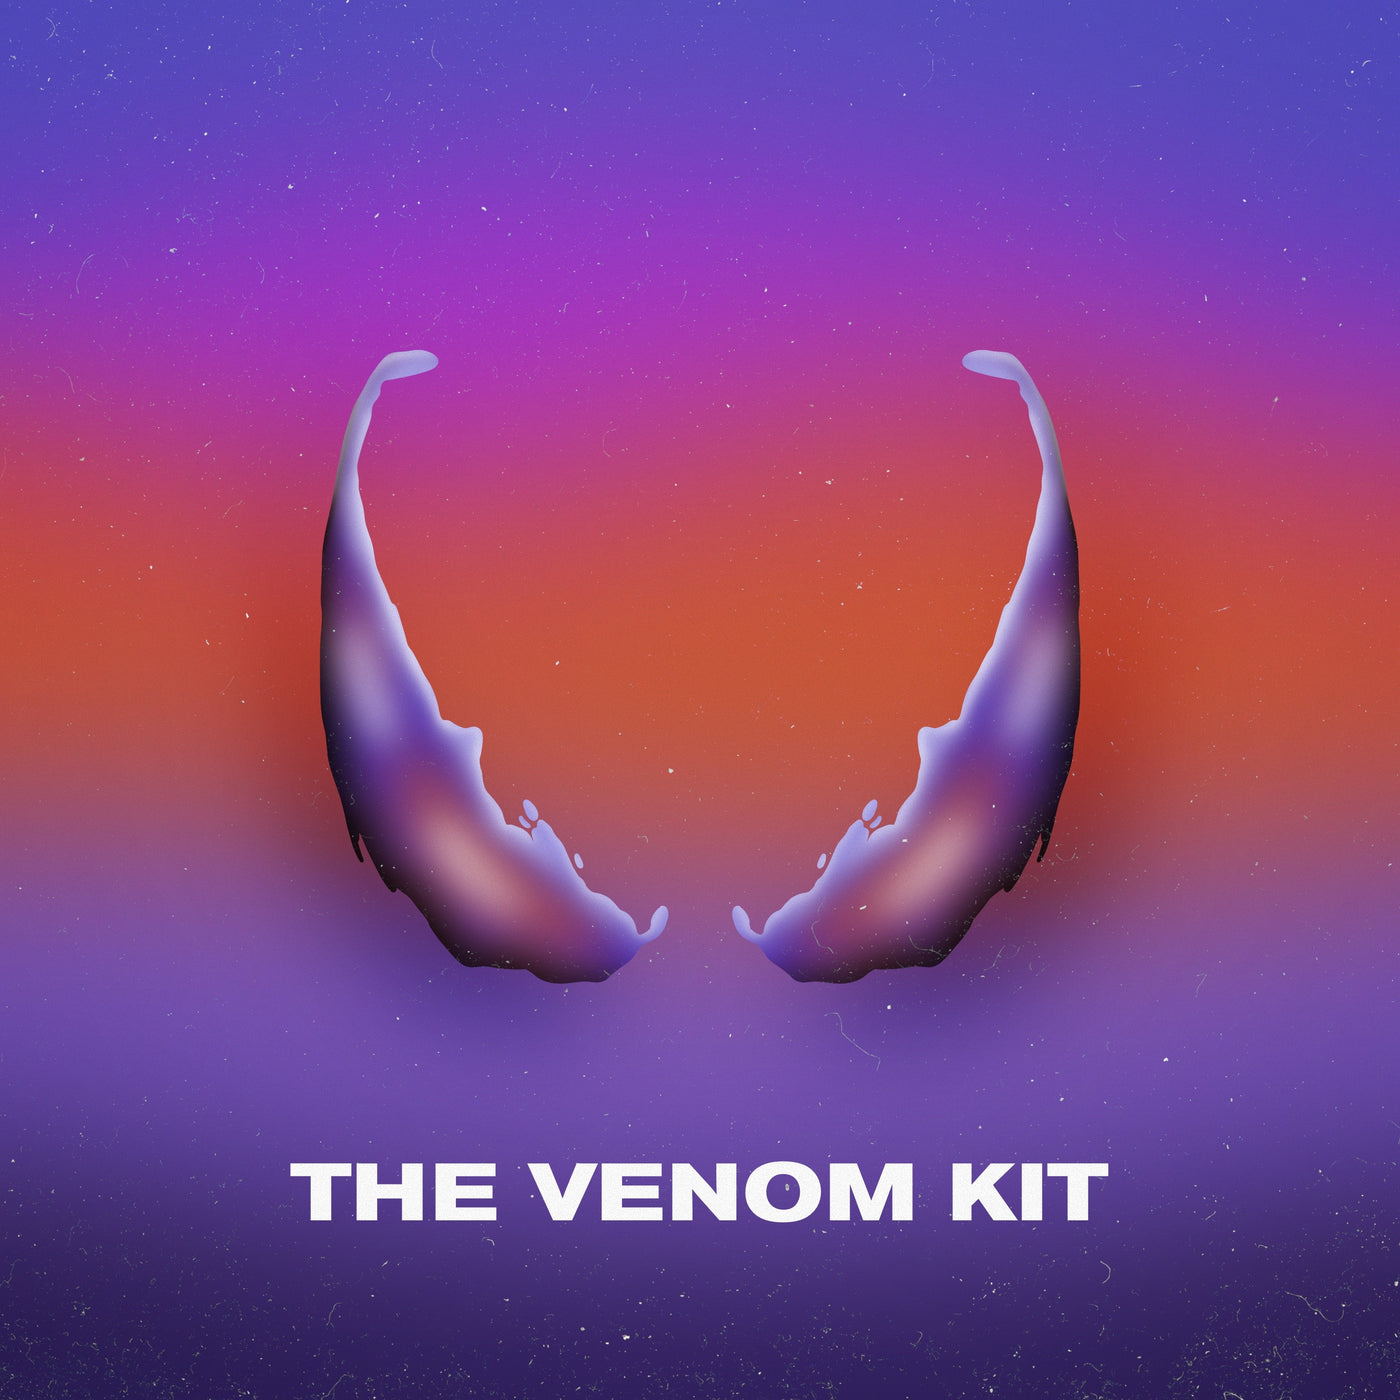 The Venom Kit